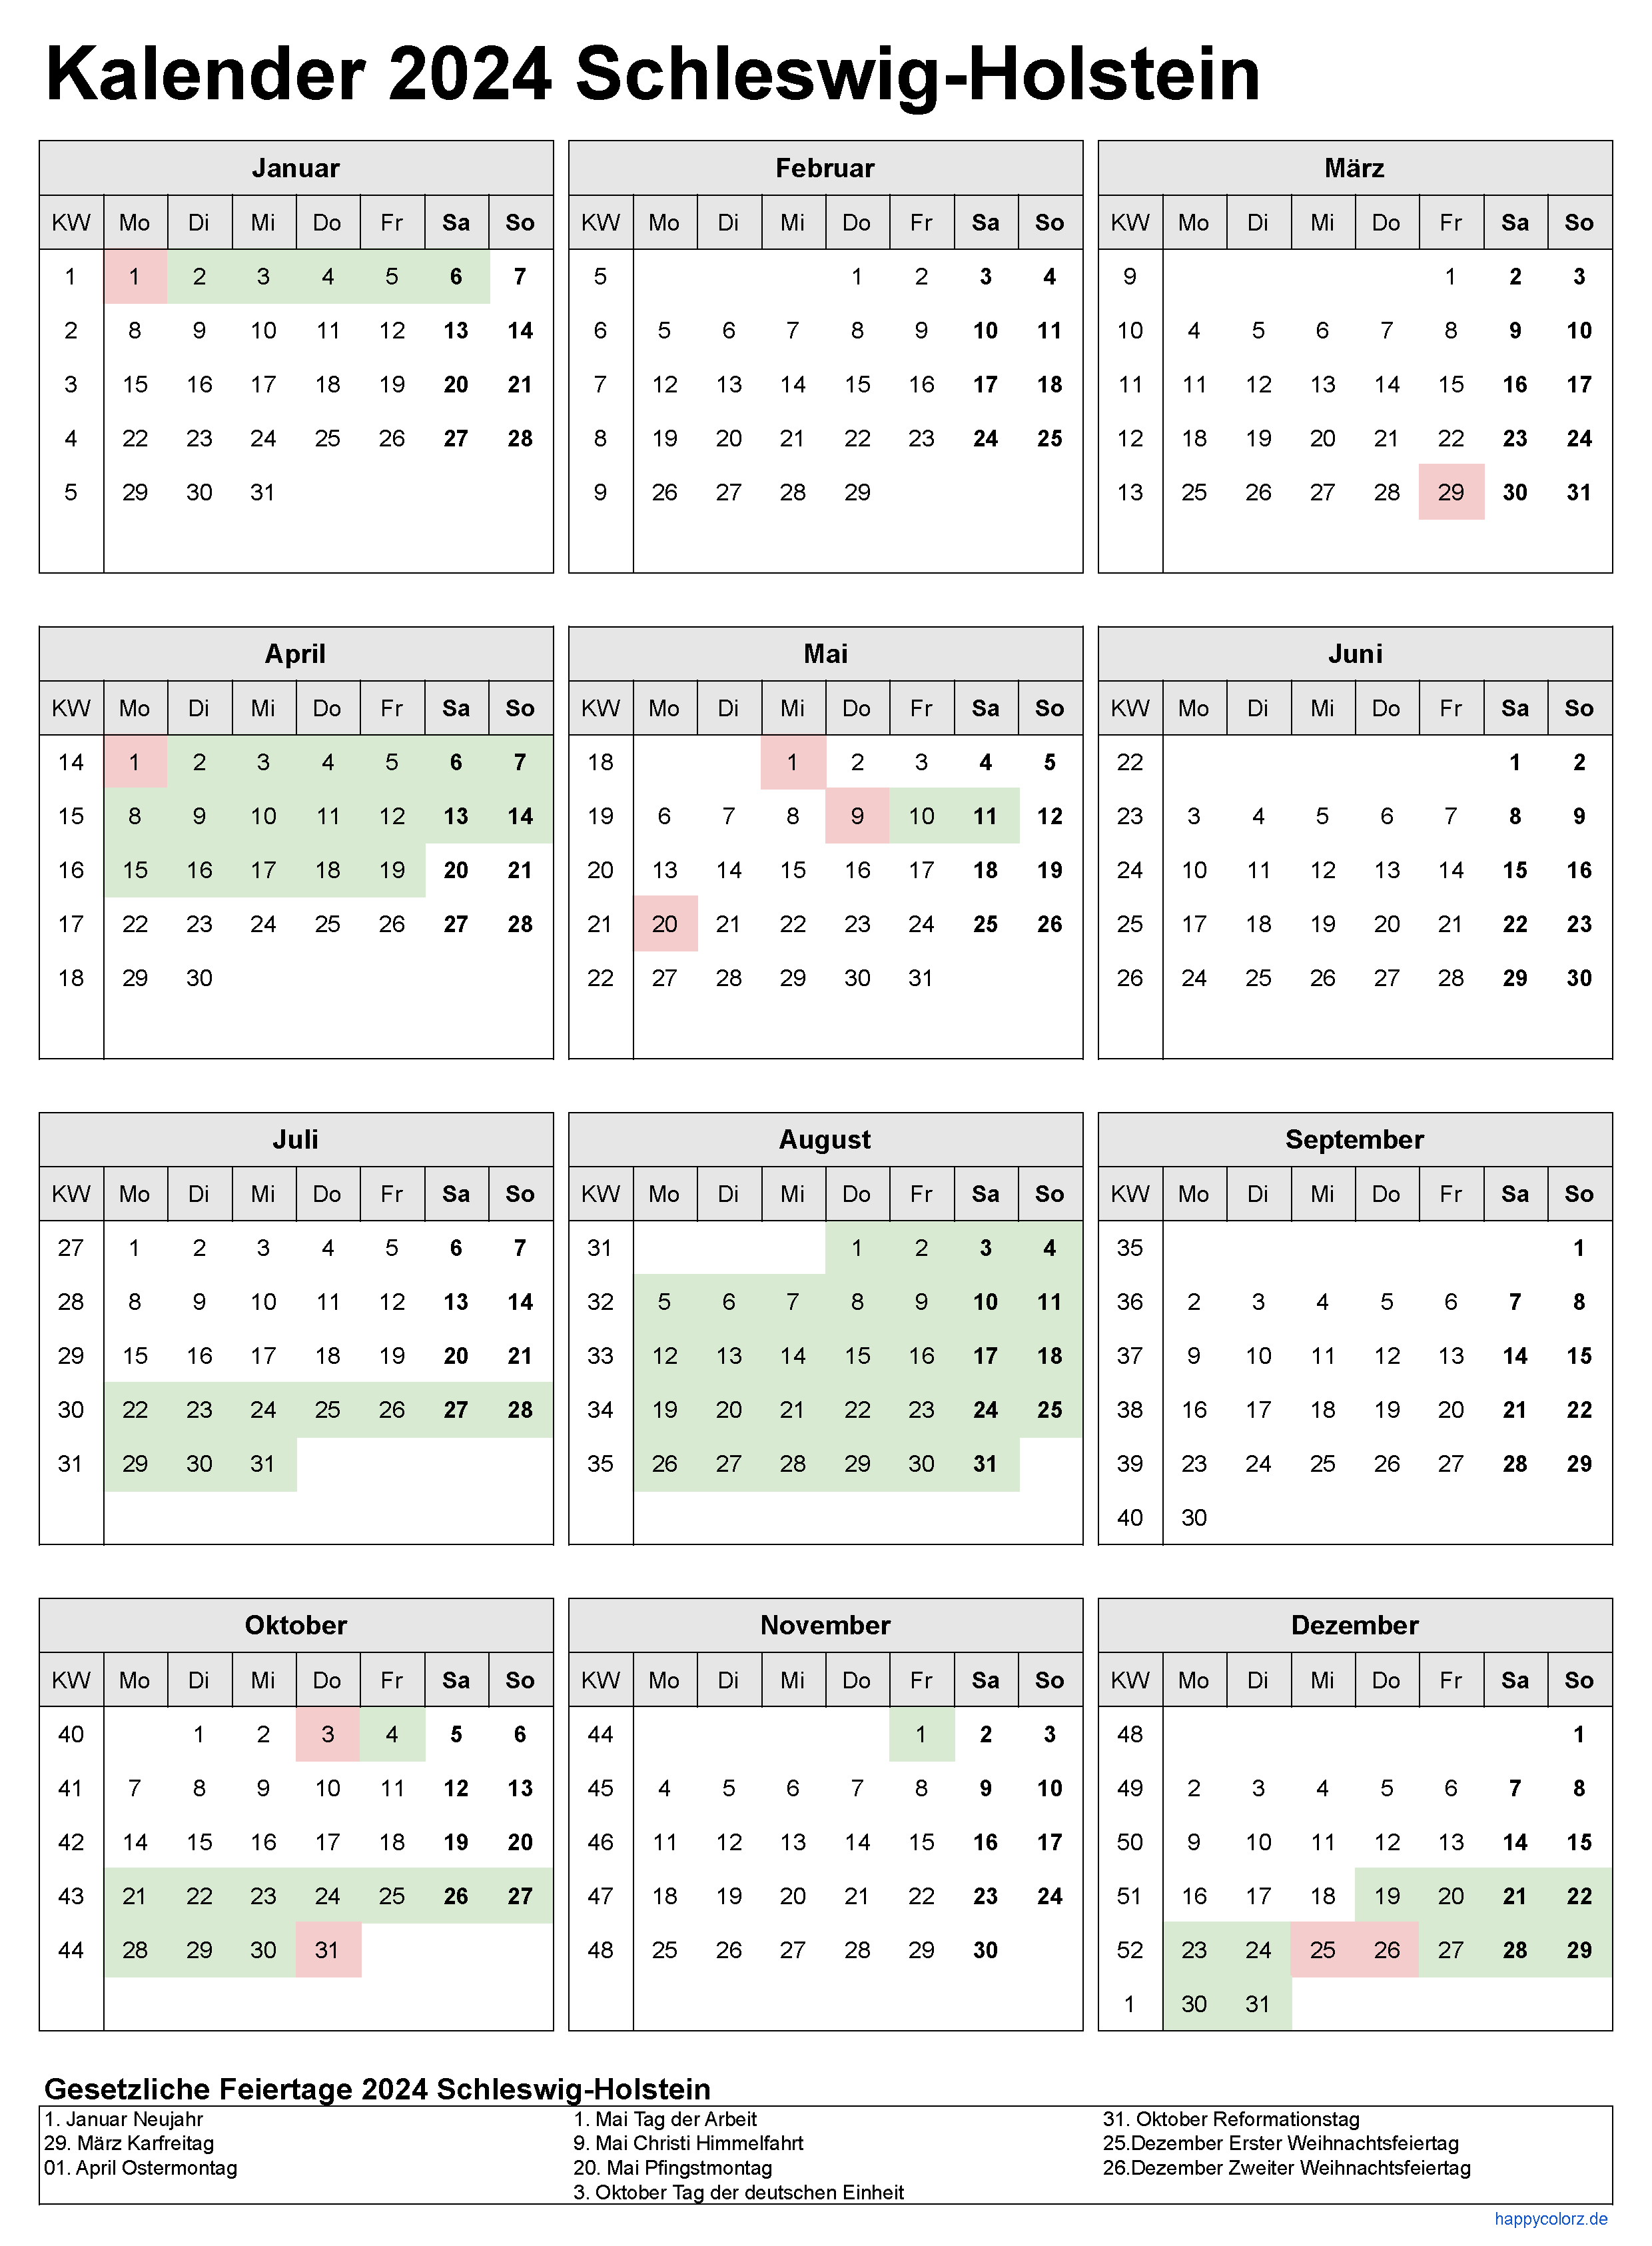 Kalender 2024 Schleswig-Holstein zum Ausdrucken